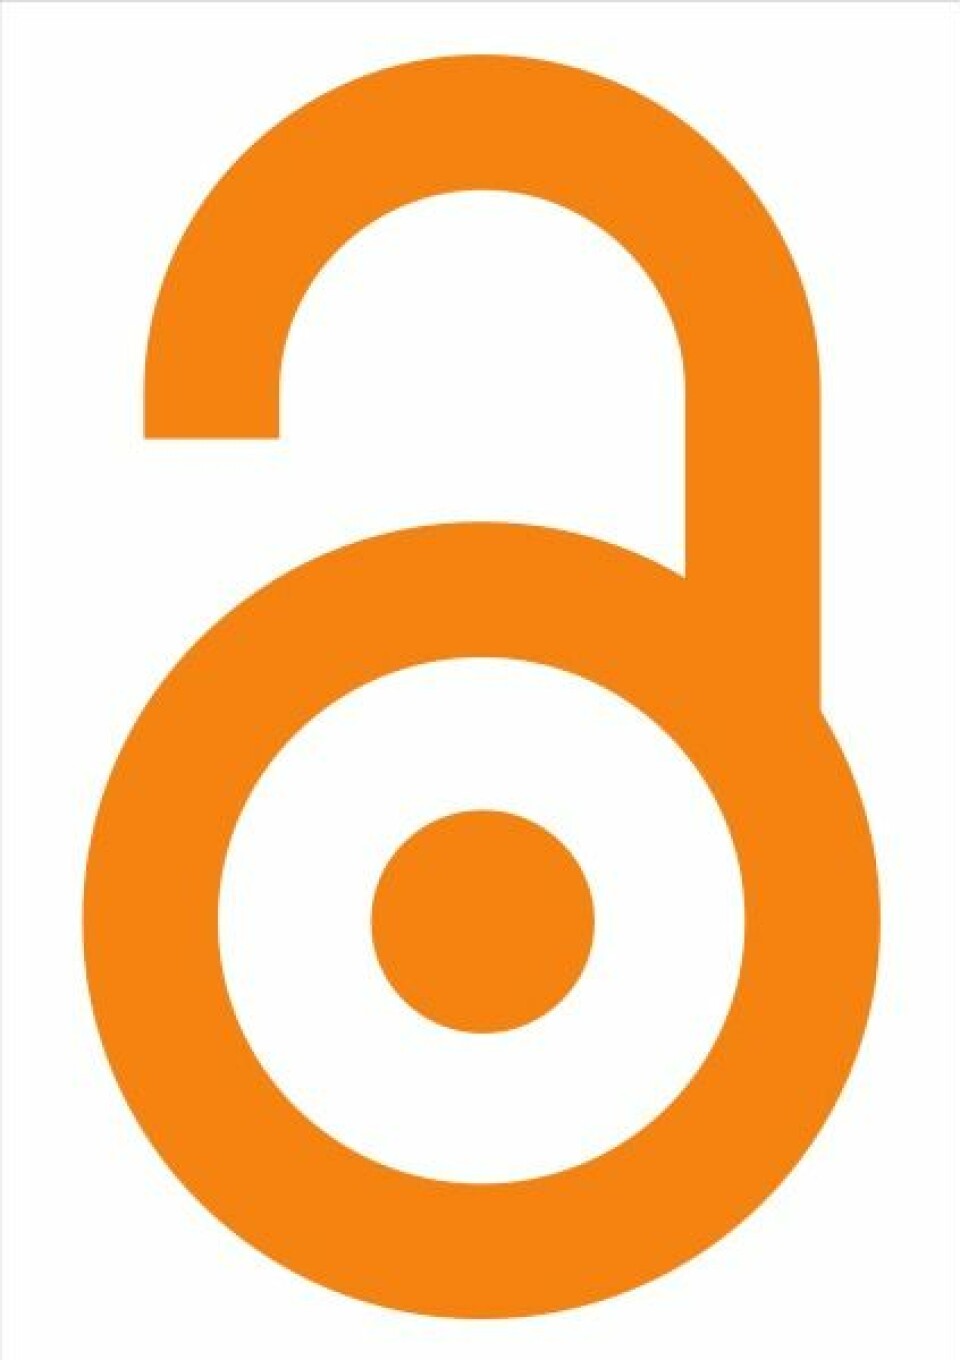 Logo for Open Access. Laget av Public Library of Science, som jobber for økt spredning av Open Access-publisering. Foto: flickr.com